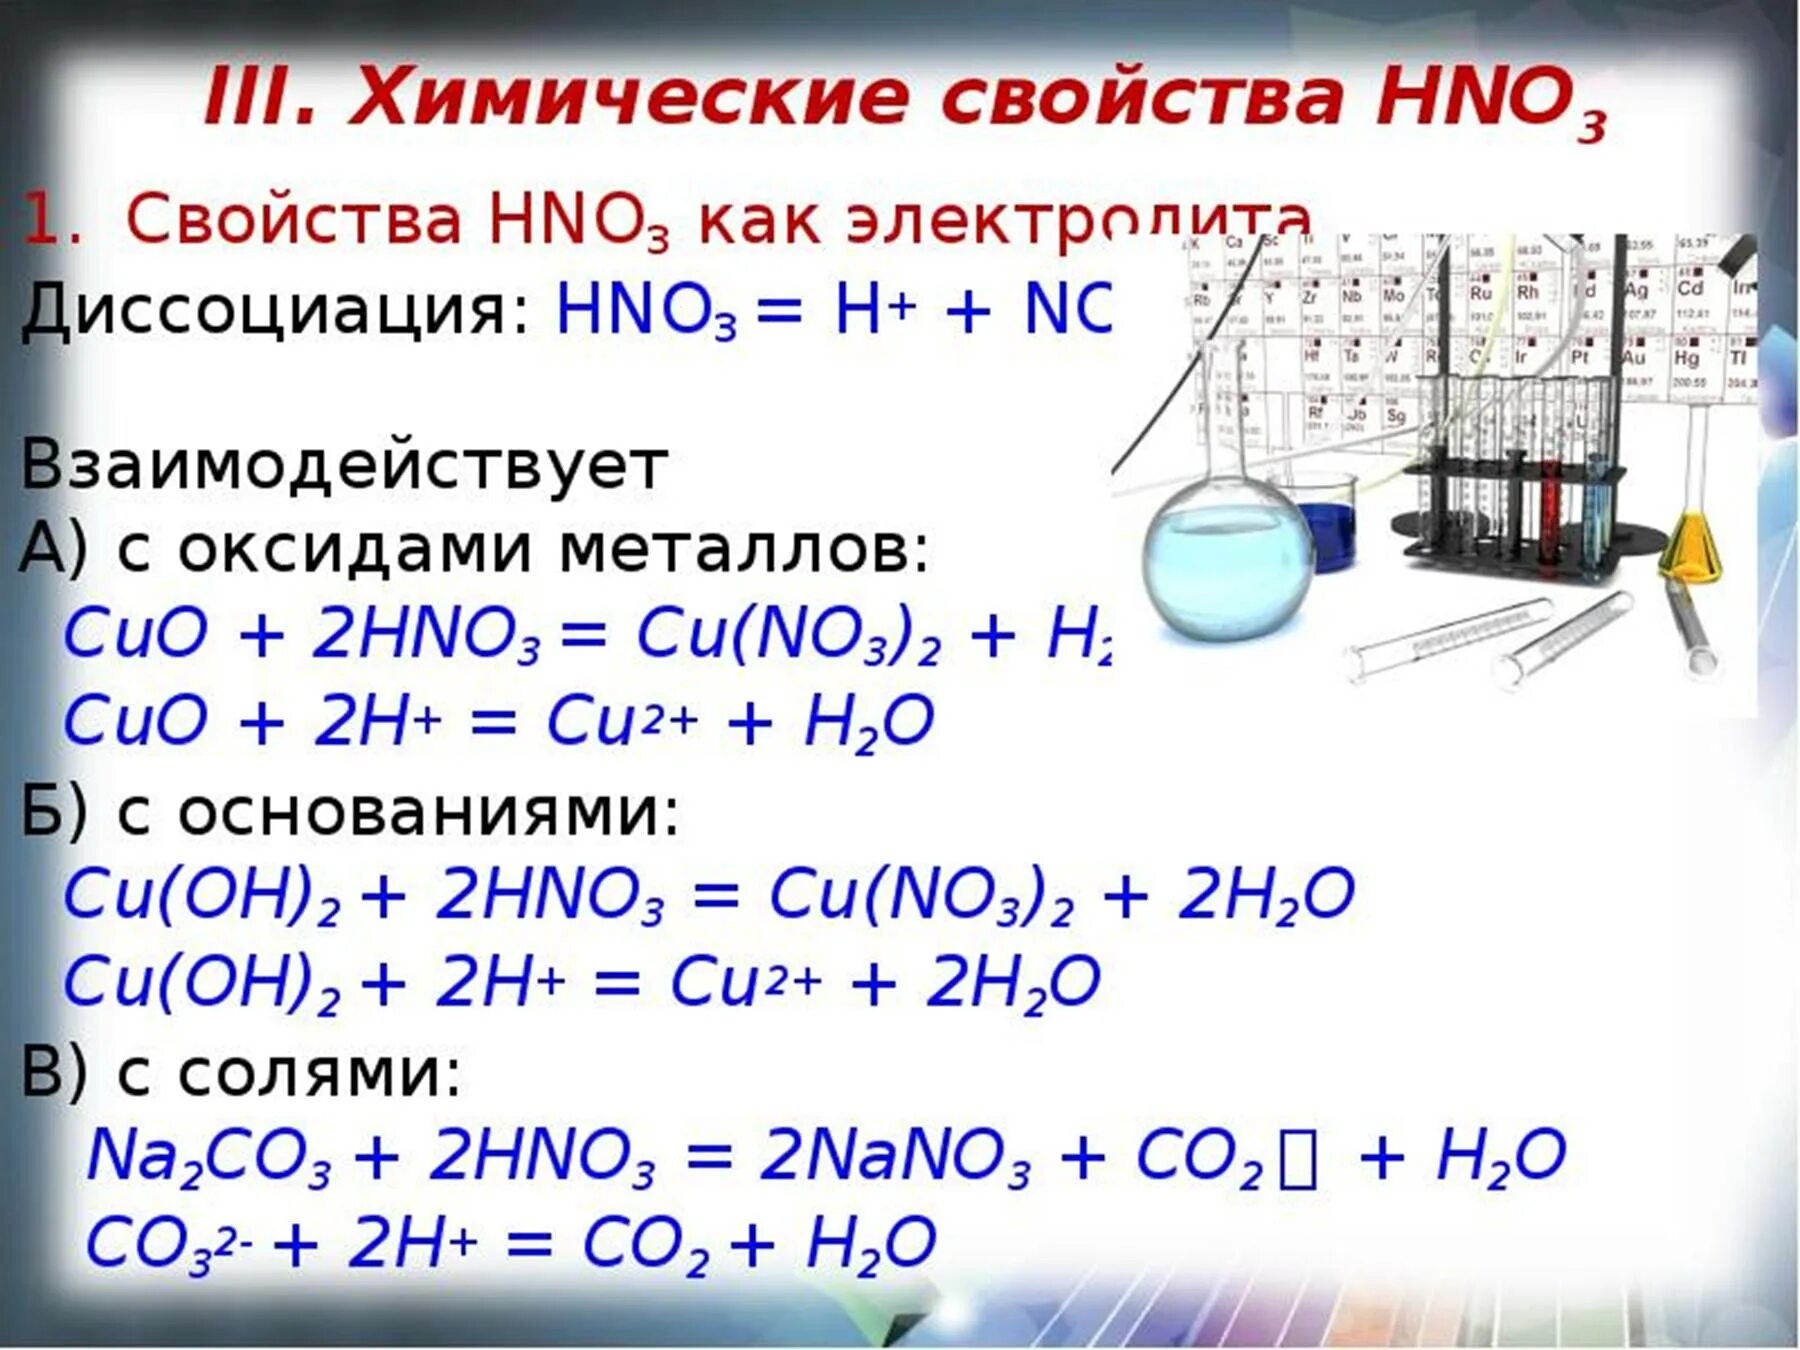 К какому классу соединений относится вещество hno3